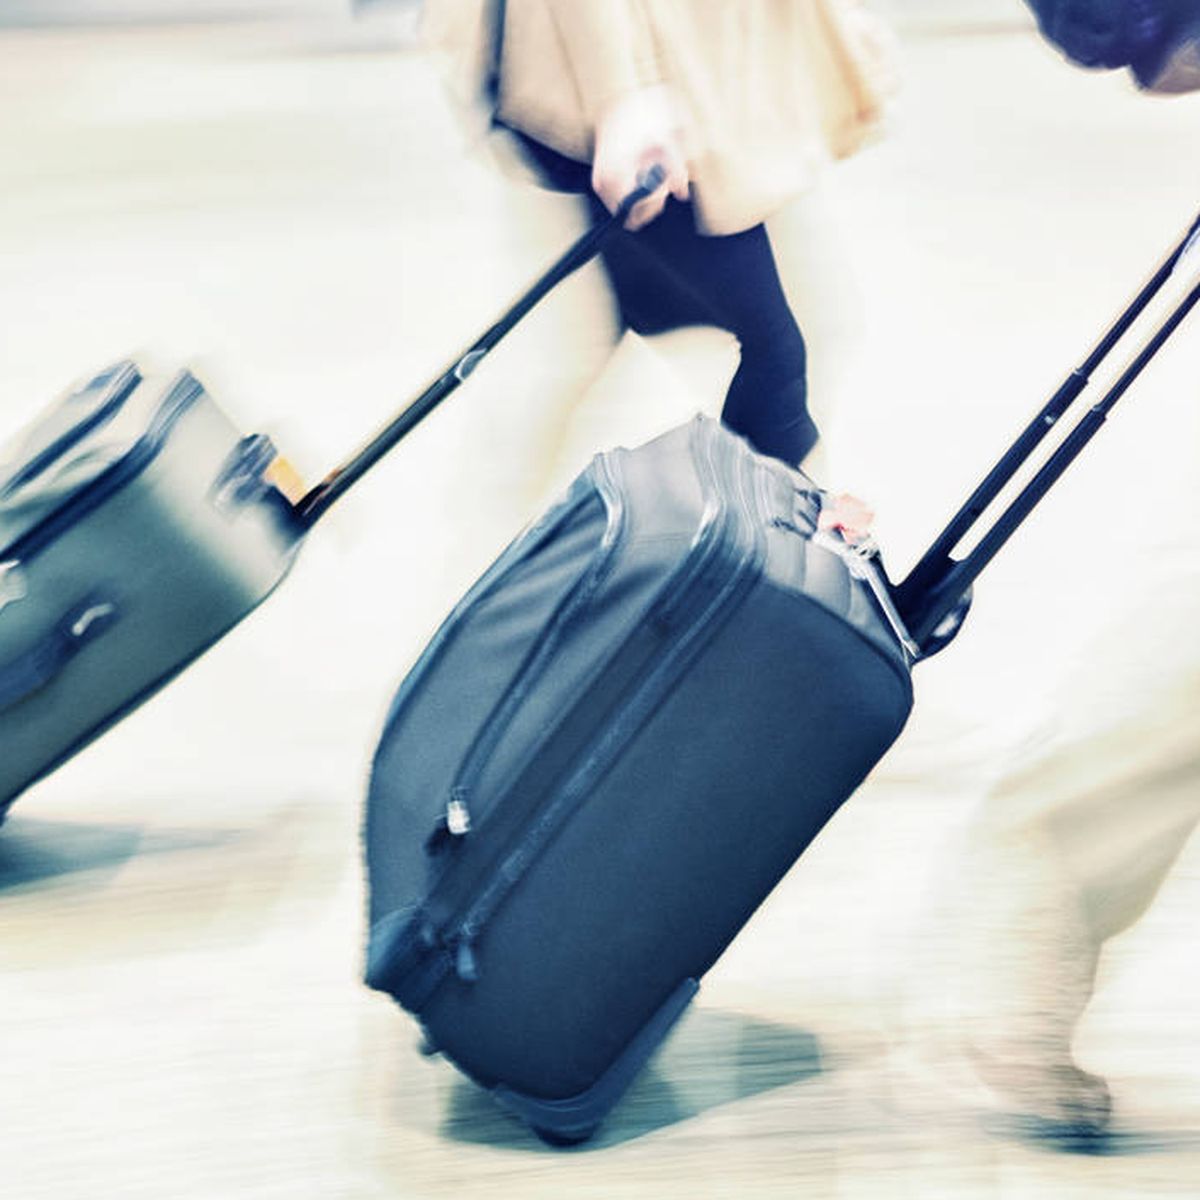 Pagar por el equipaje de mano? United Airlines cobra por llevar maleta